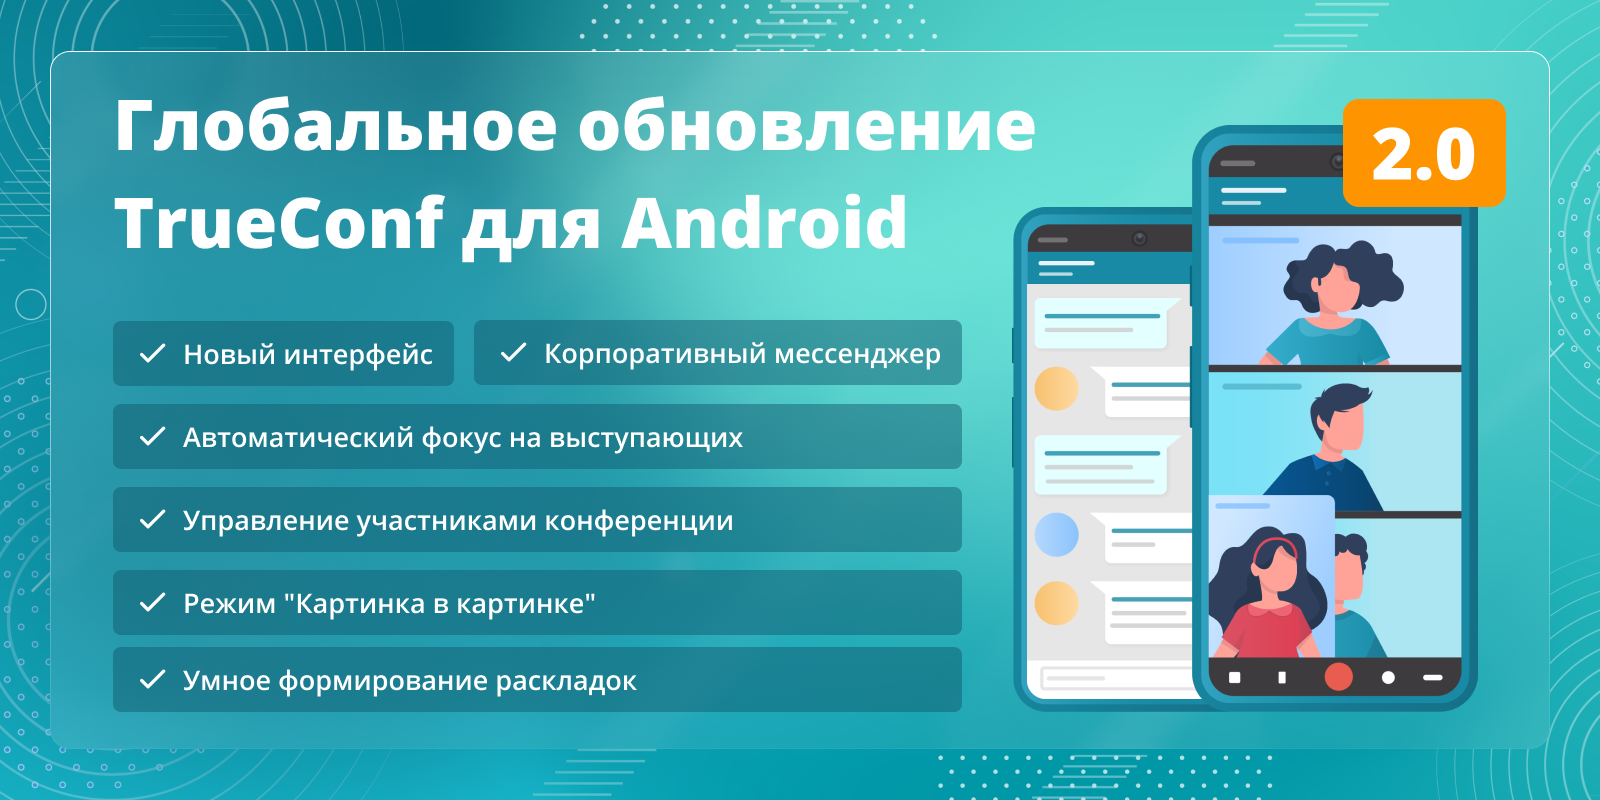 TrueConf 2.0 для Android: видеосвязь и мессенджер в одном приложении 3